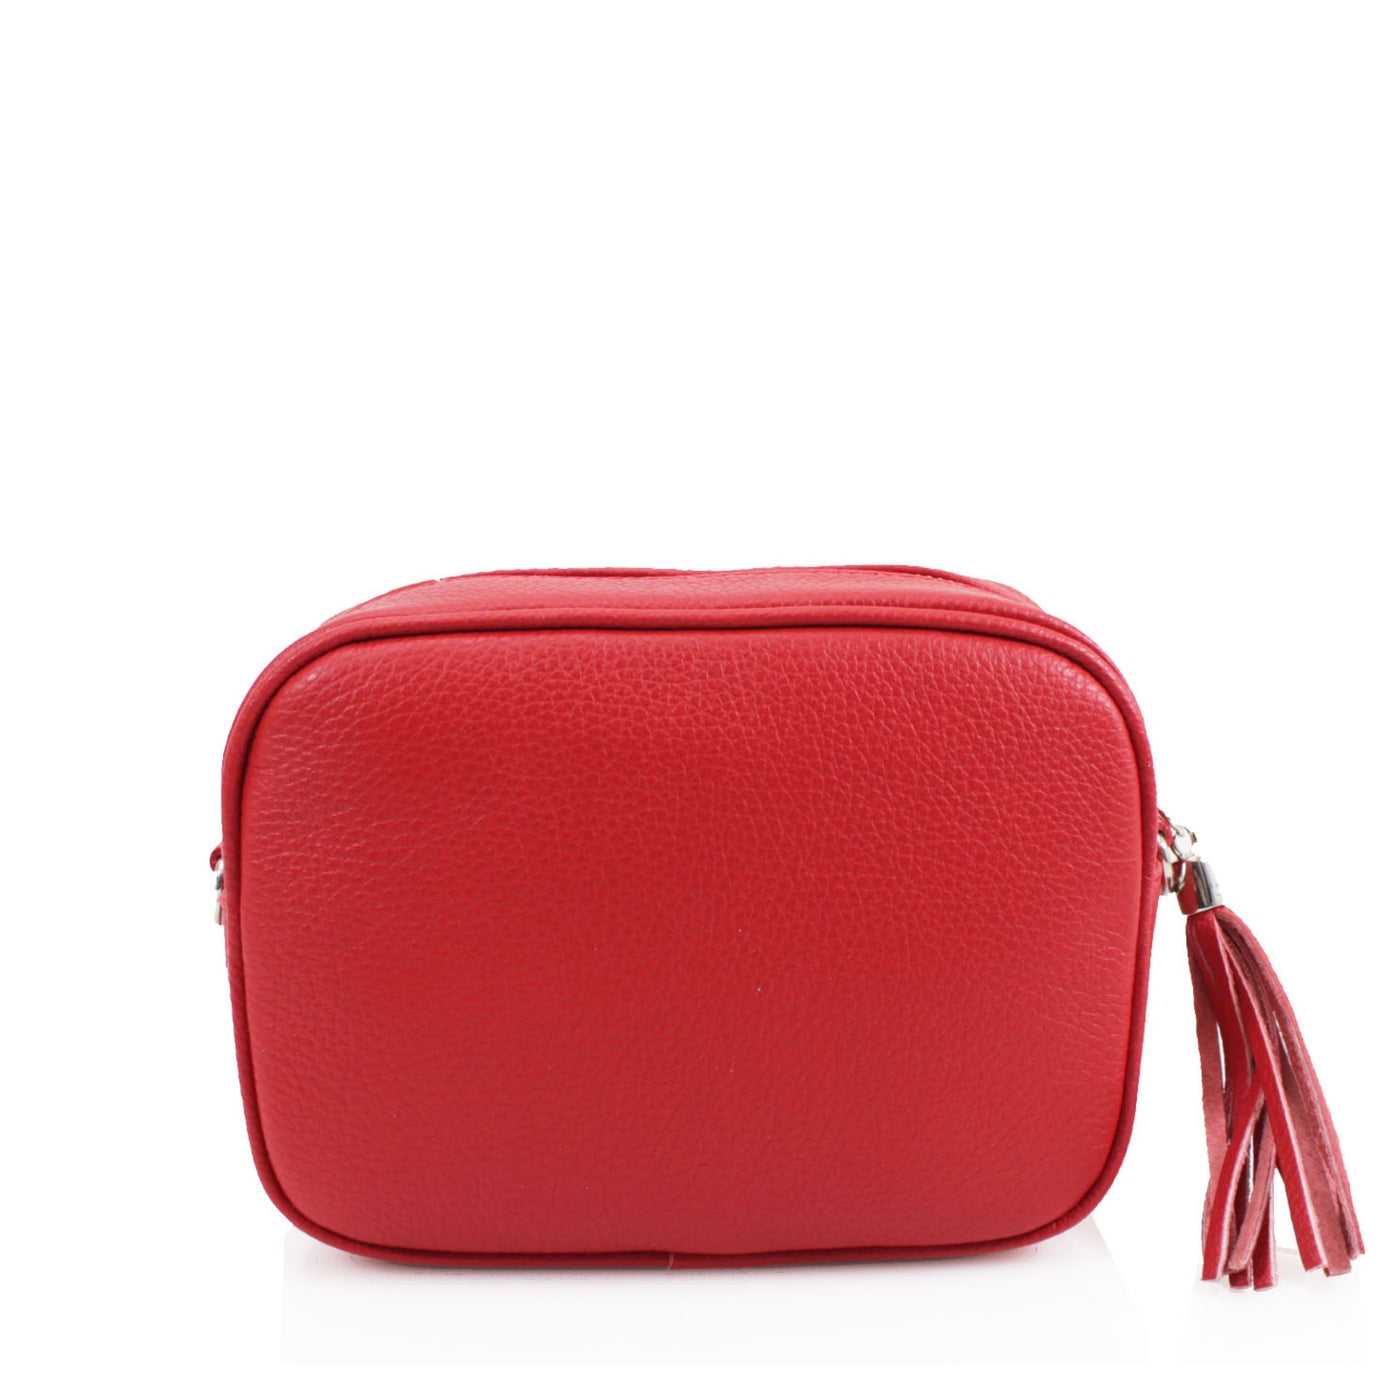 Leather Camera Tassel Handbag - Red